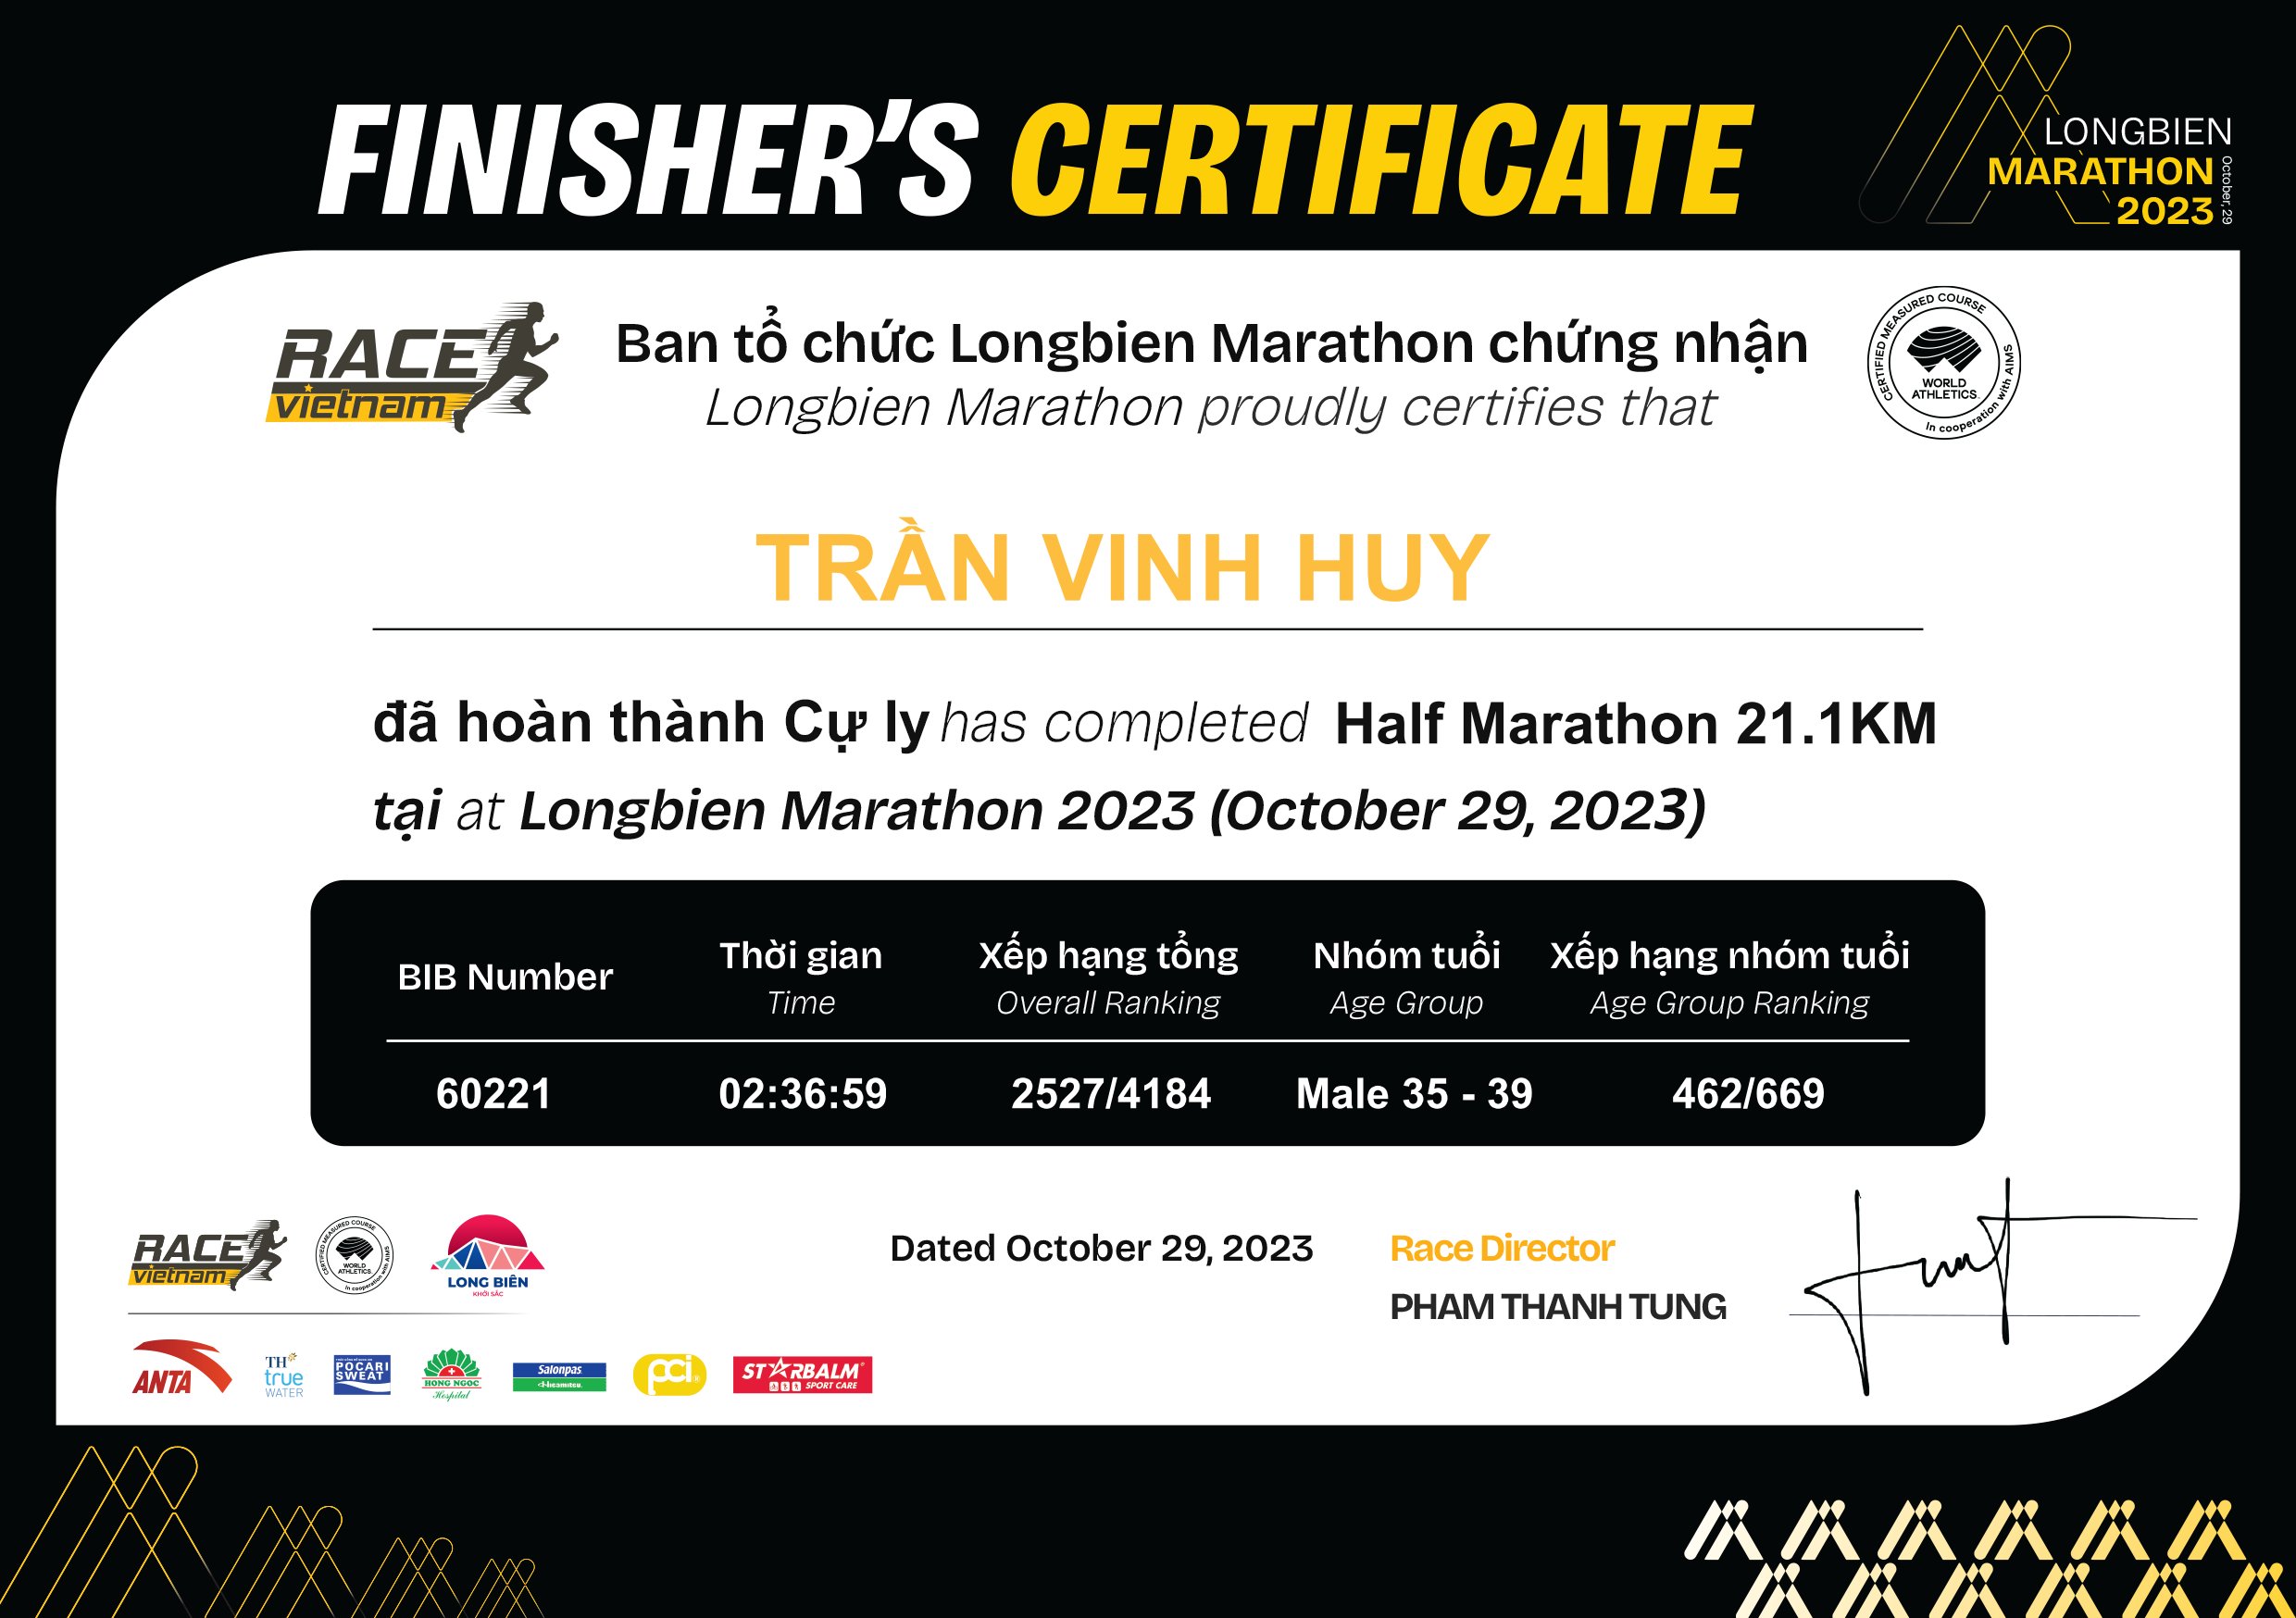 60221 - Trần Vinh Huy